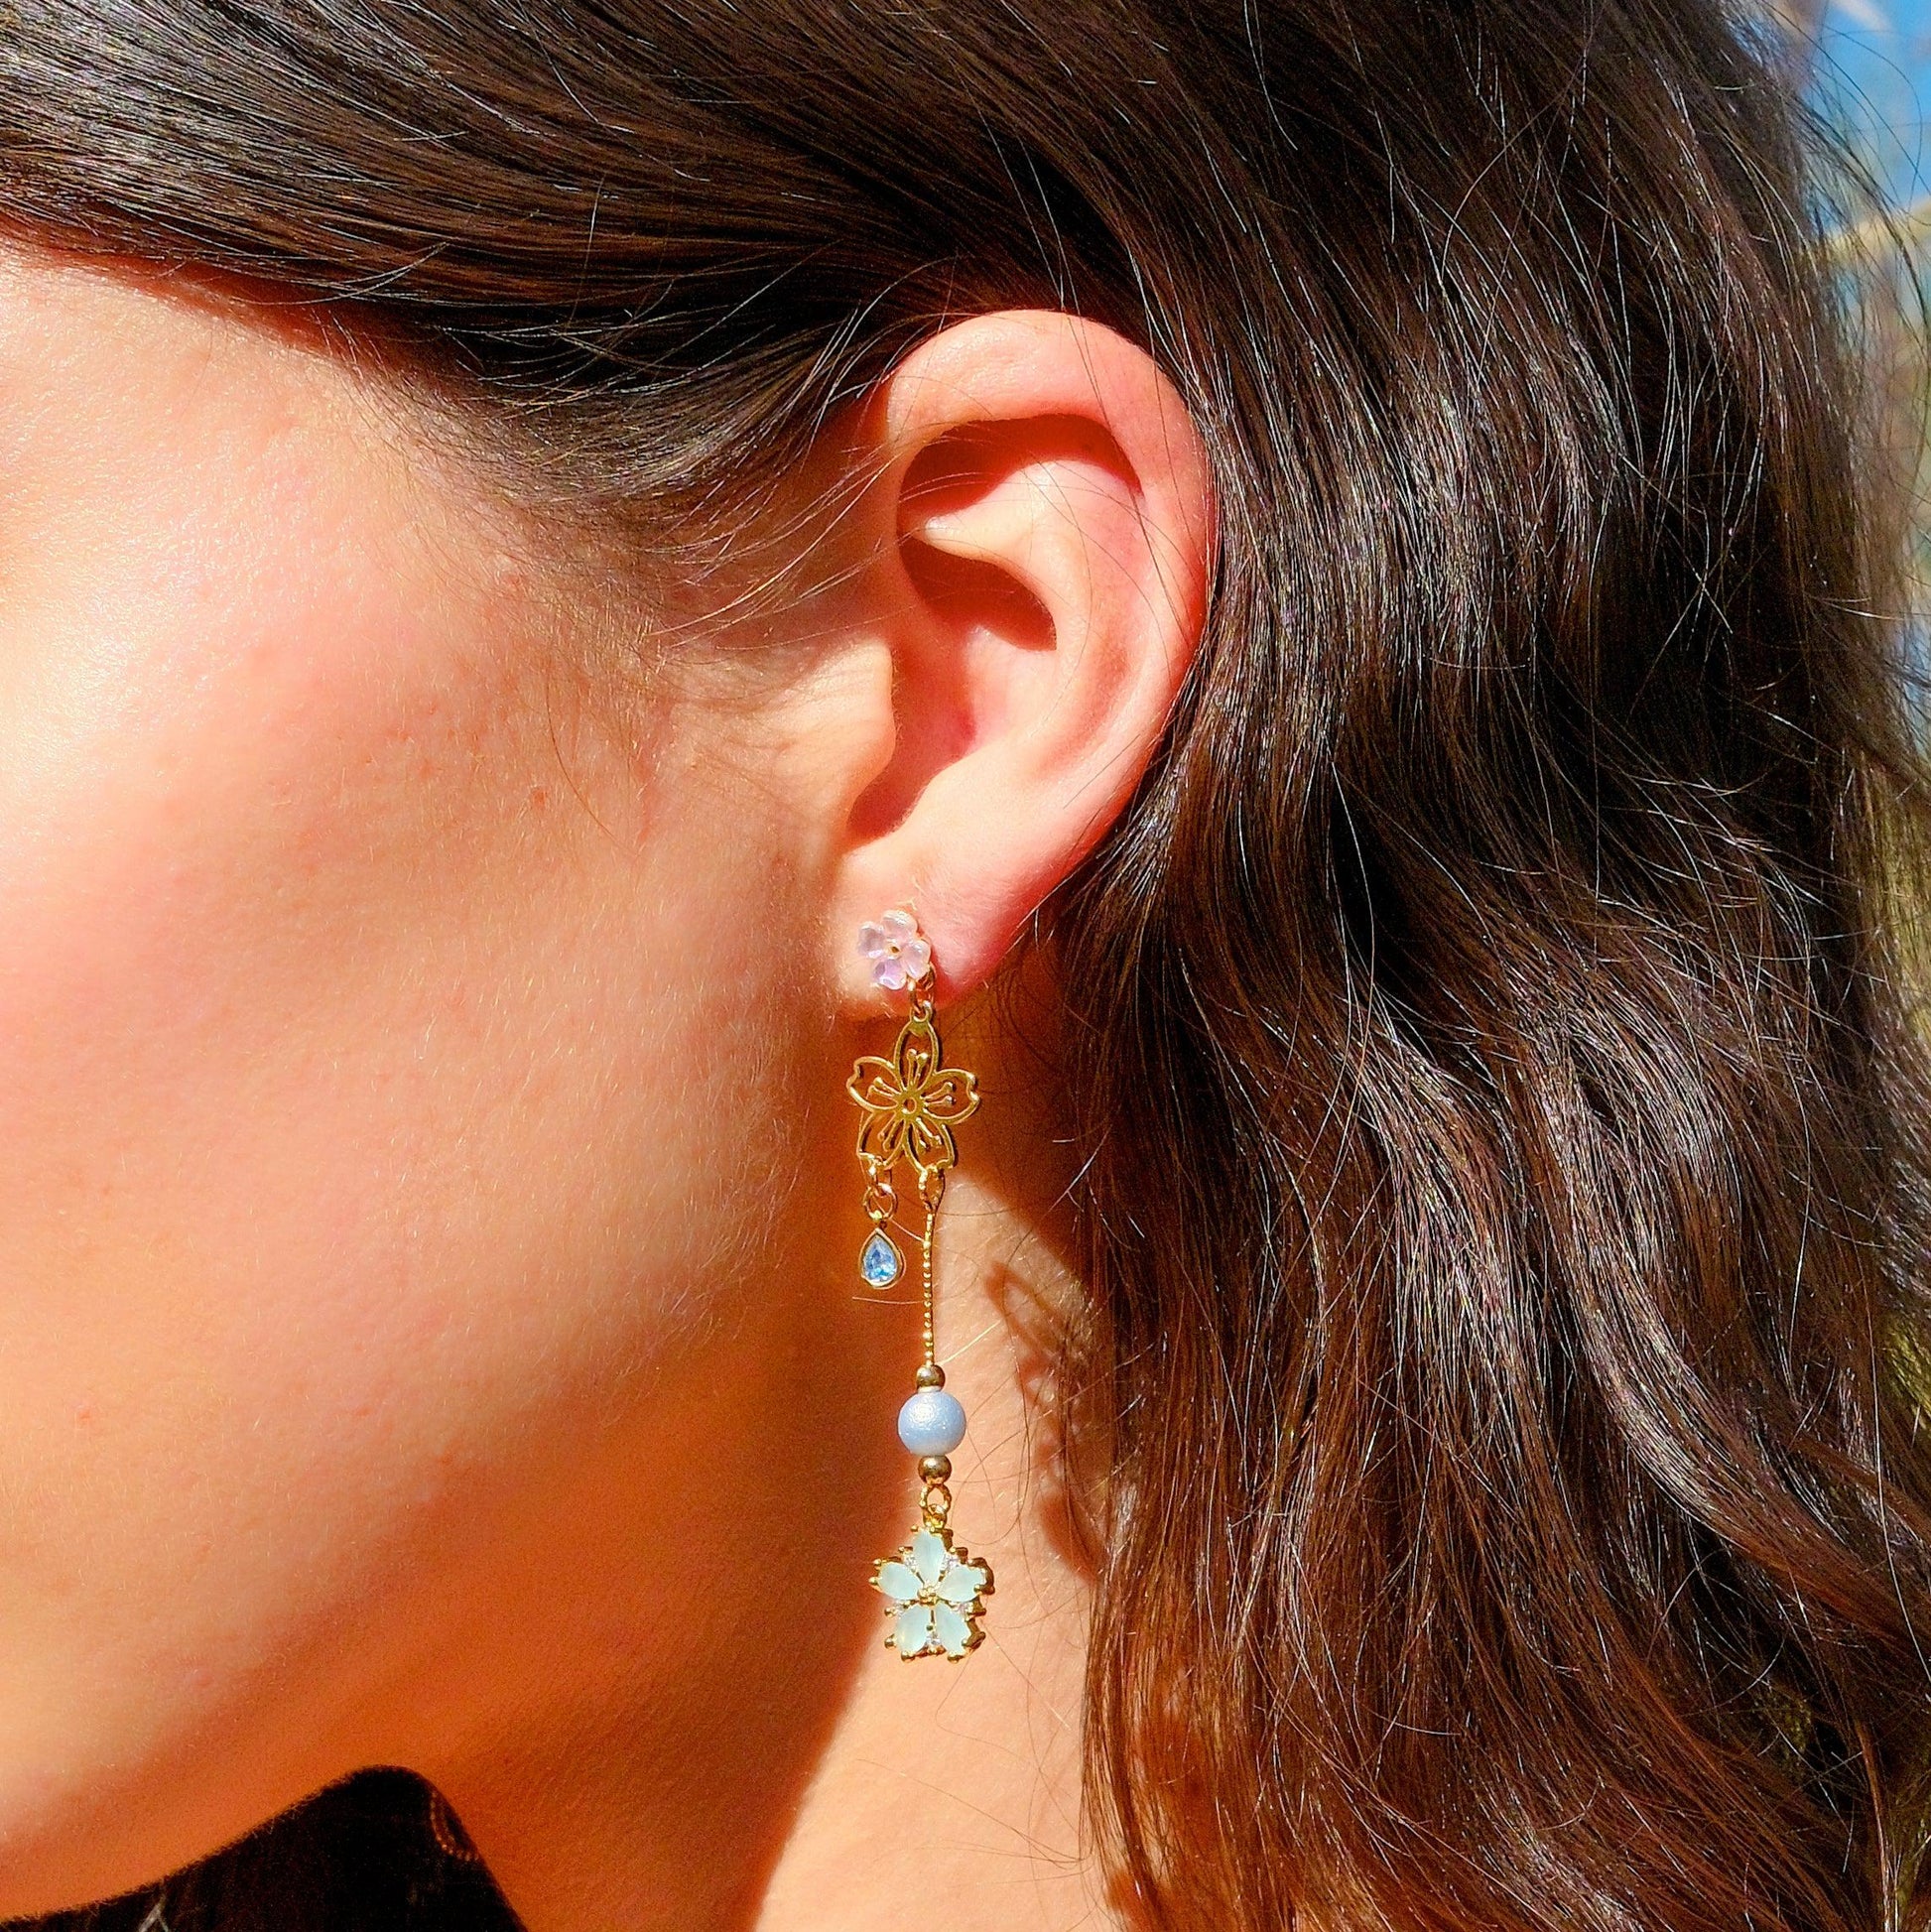 Blue Dream Earrings